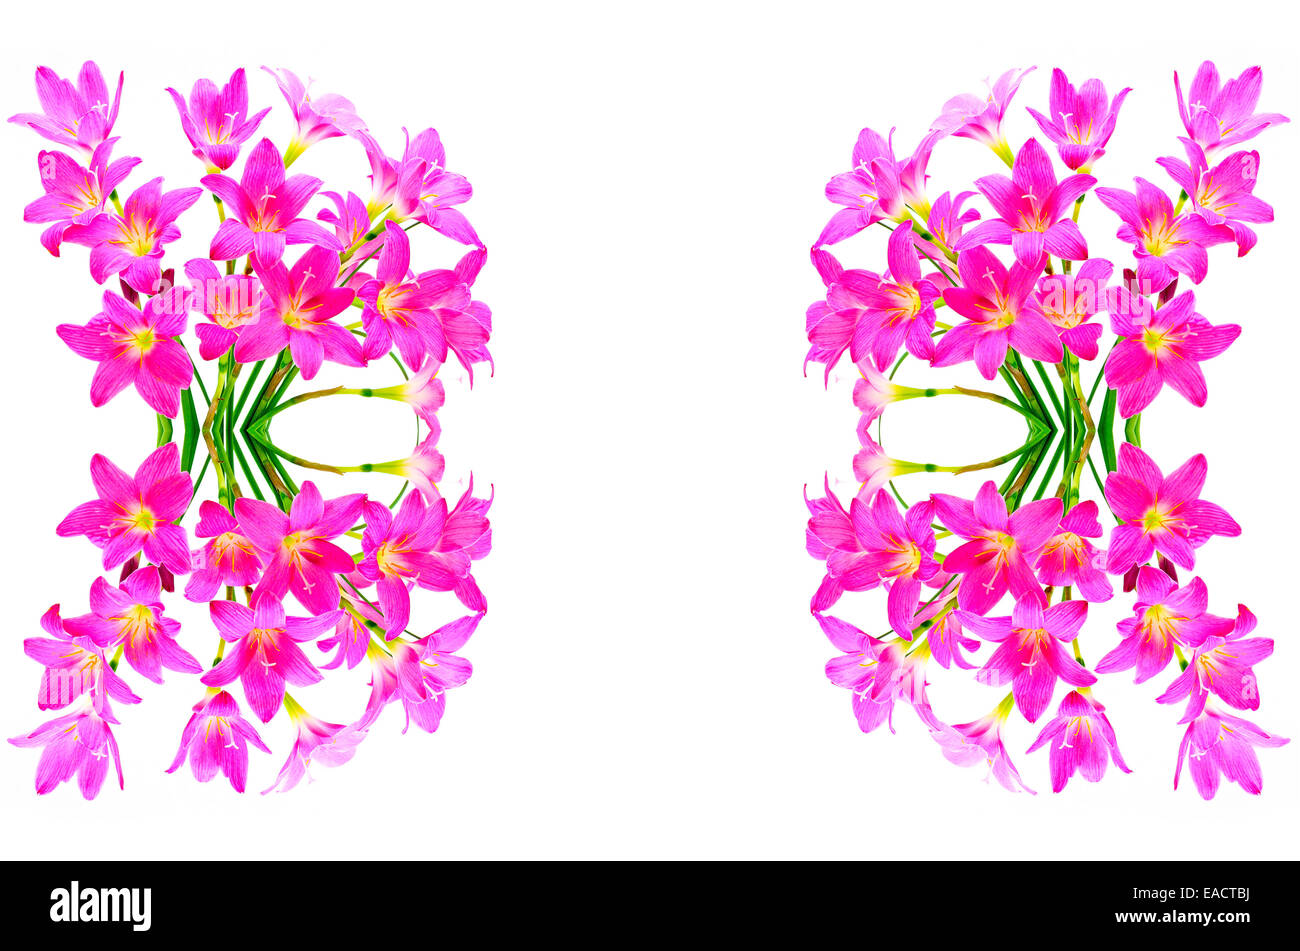 Blüte rosa Zephyranthes Lily, Regen-Lilie, Fairy Lily, kleine Hexen, isoliert auf weißem Hintergrund Stockfoto